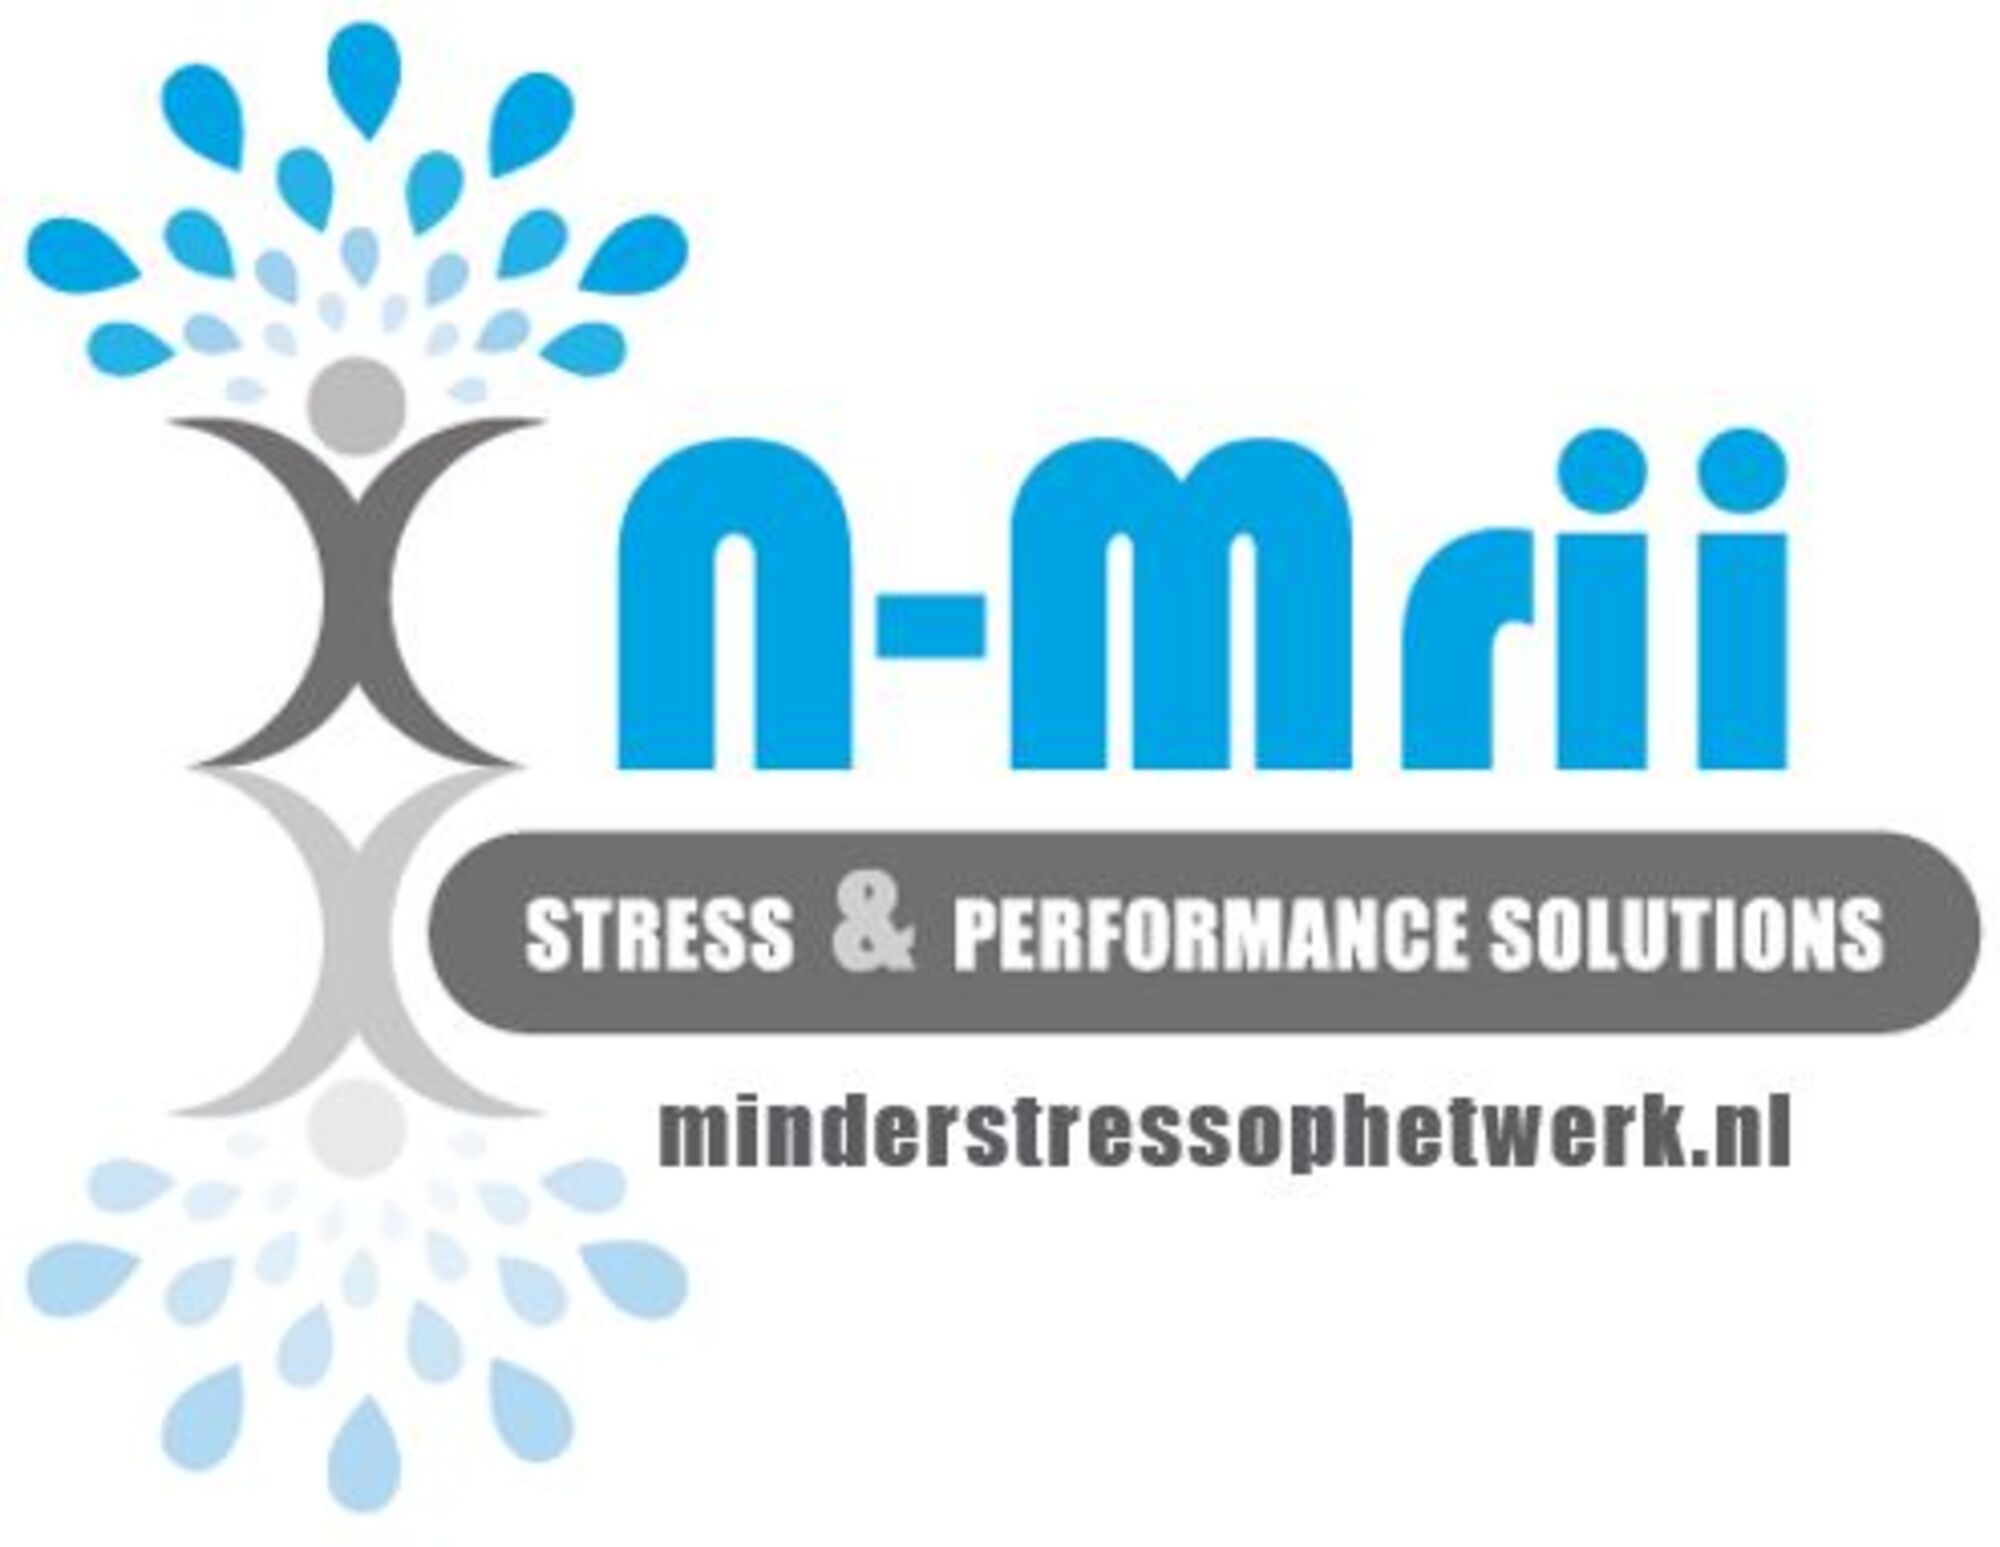 Logo boom inclusief minderstressophetwerk.nl.JPG